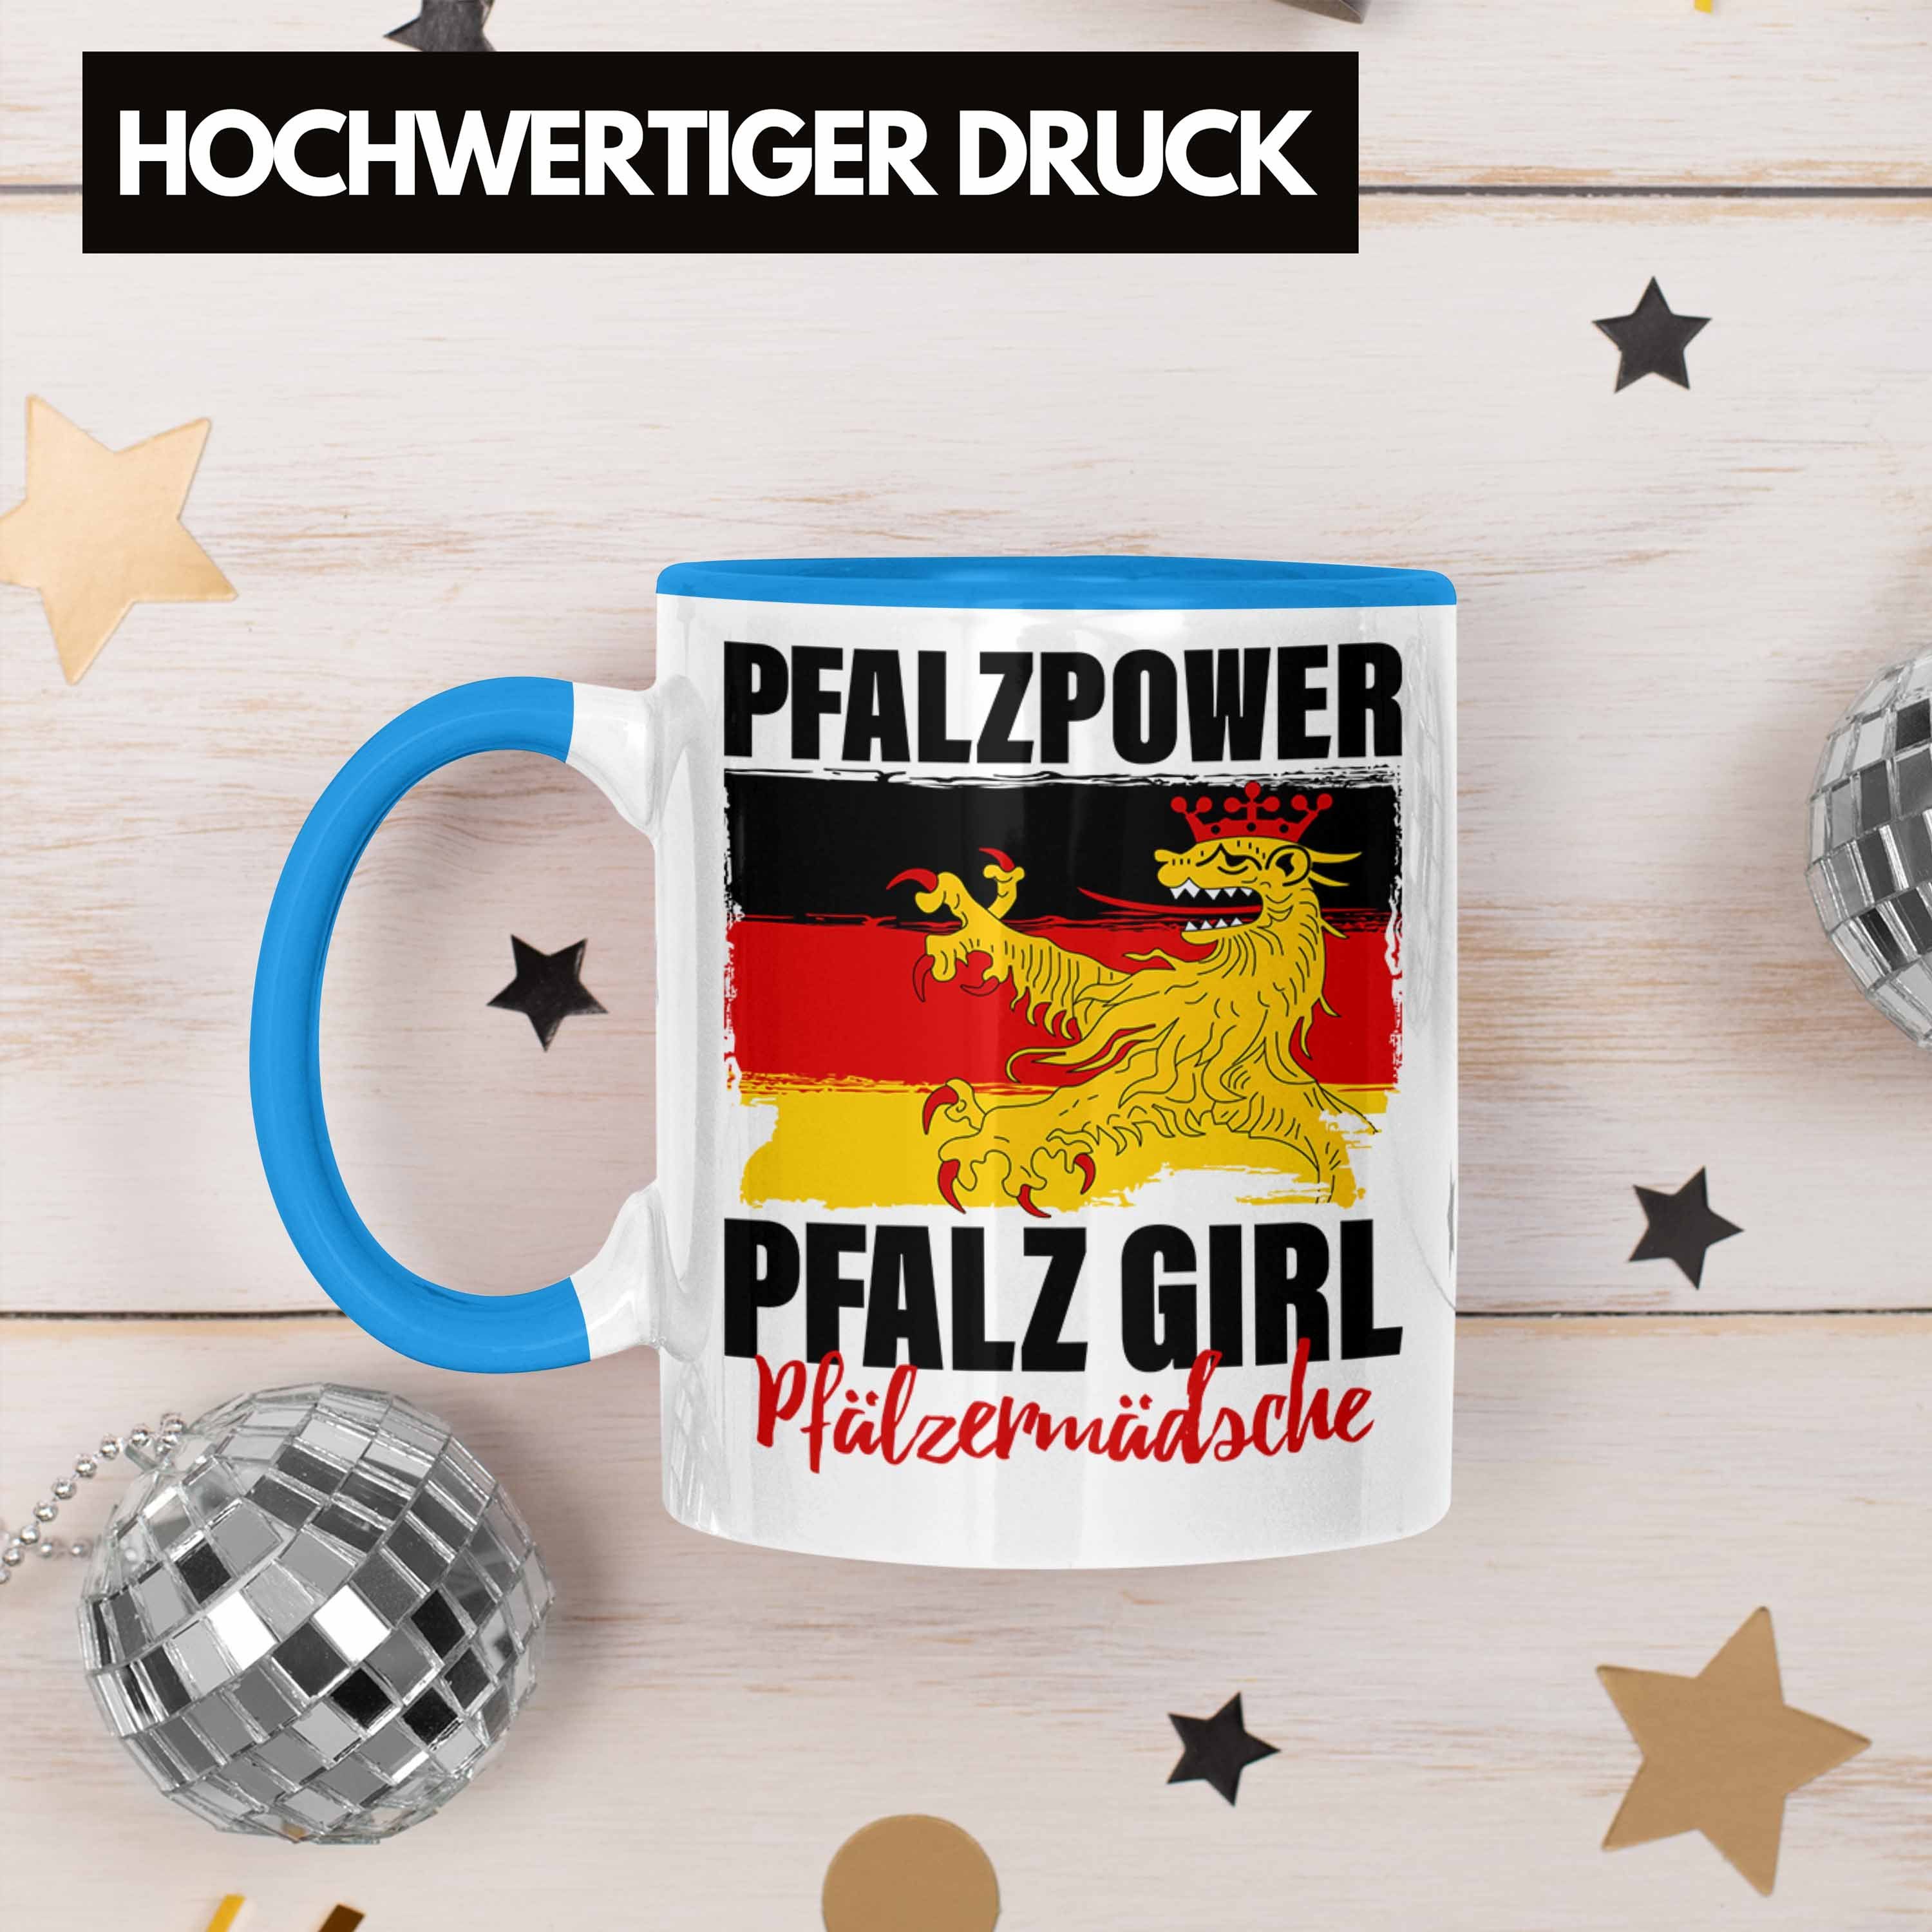 Pfalzpower Geschenk Trendation Blau Frauen Tasse Pfalzmädsche Pfalz Girl Tasse